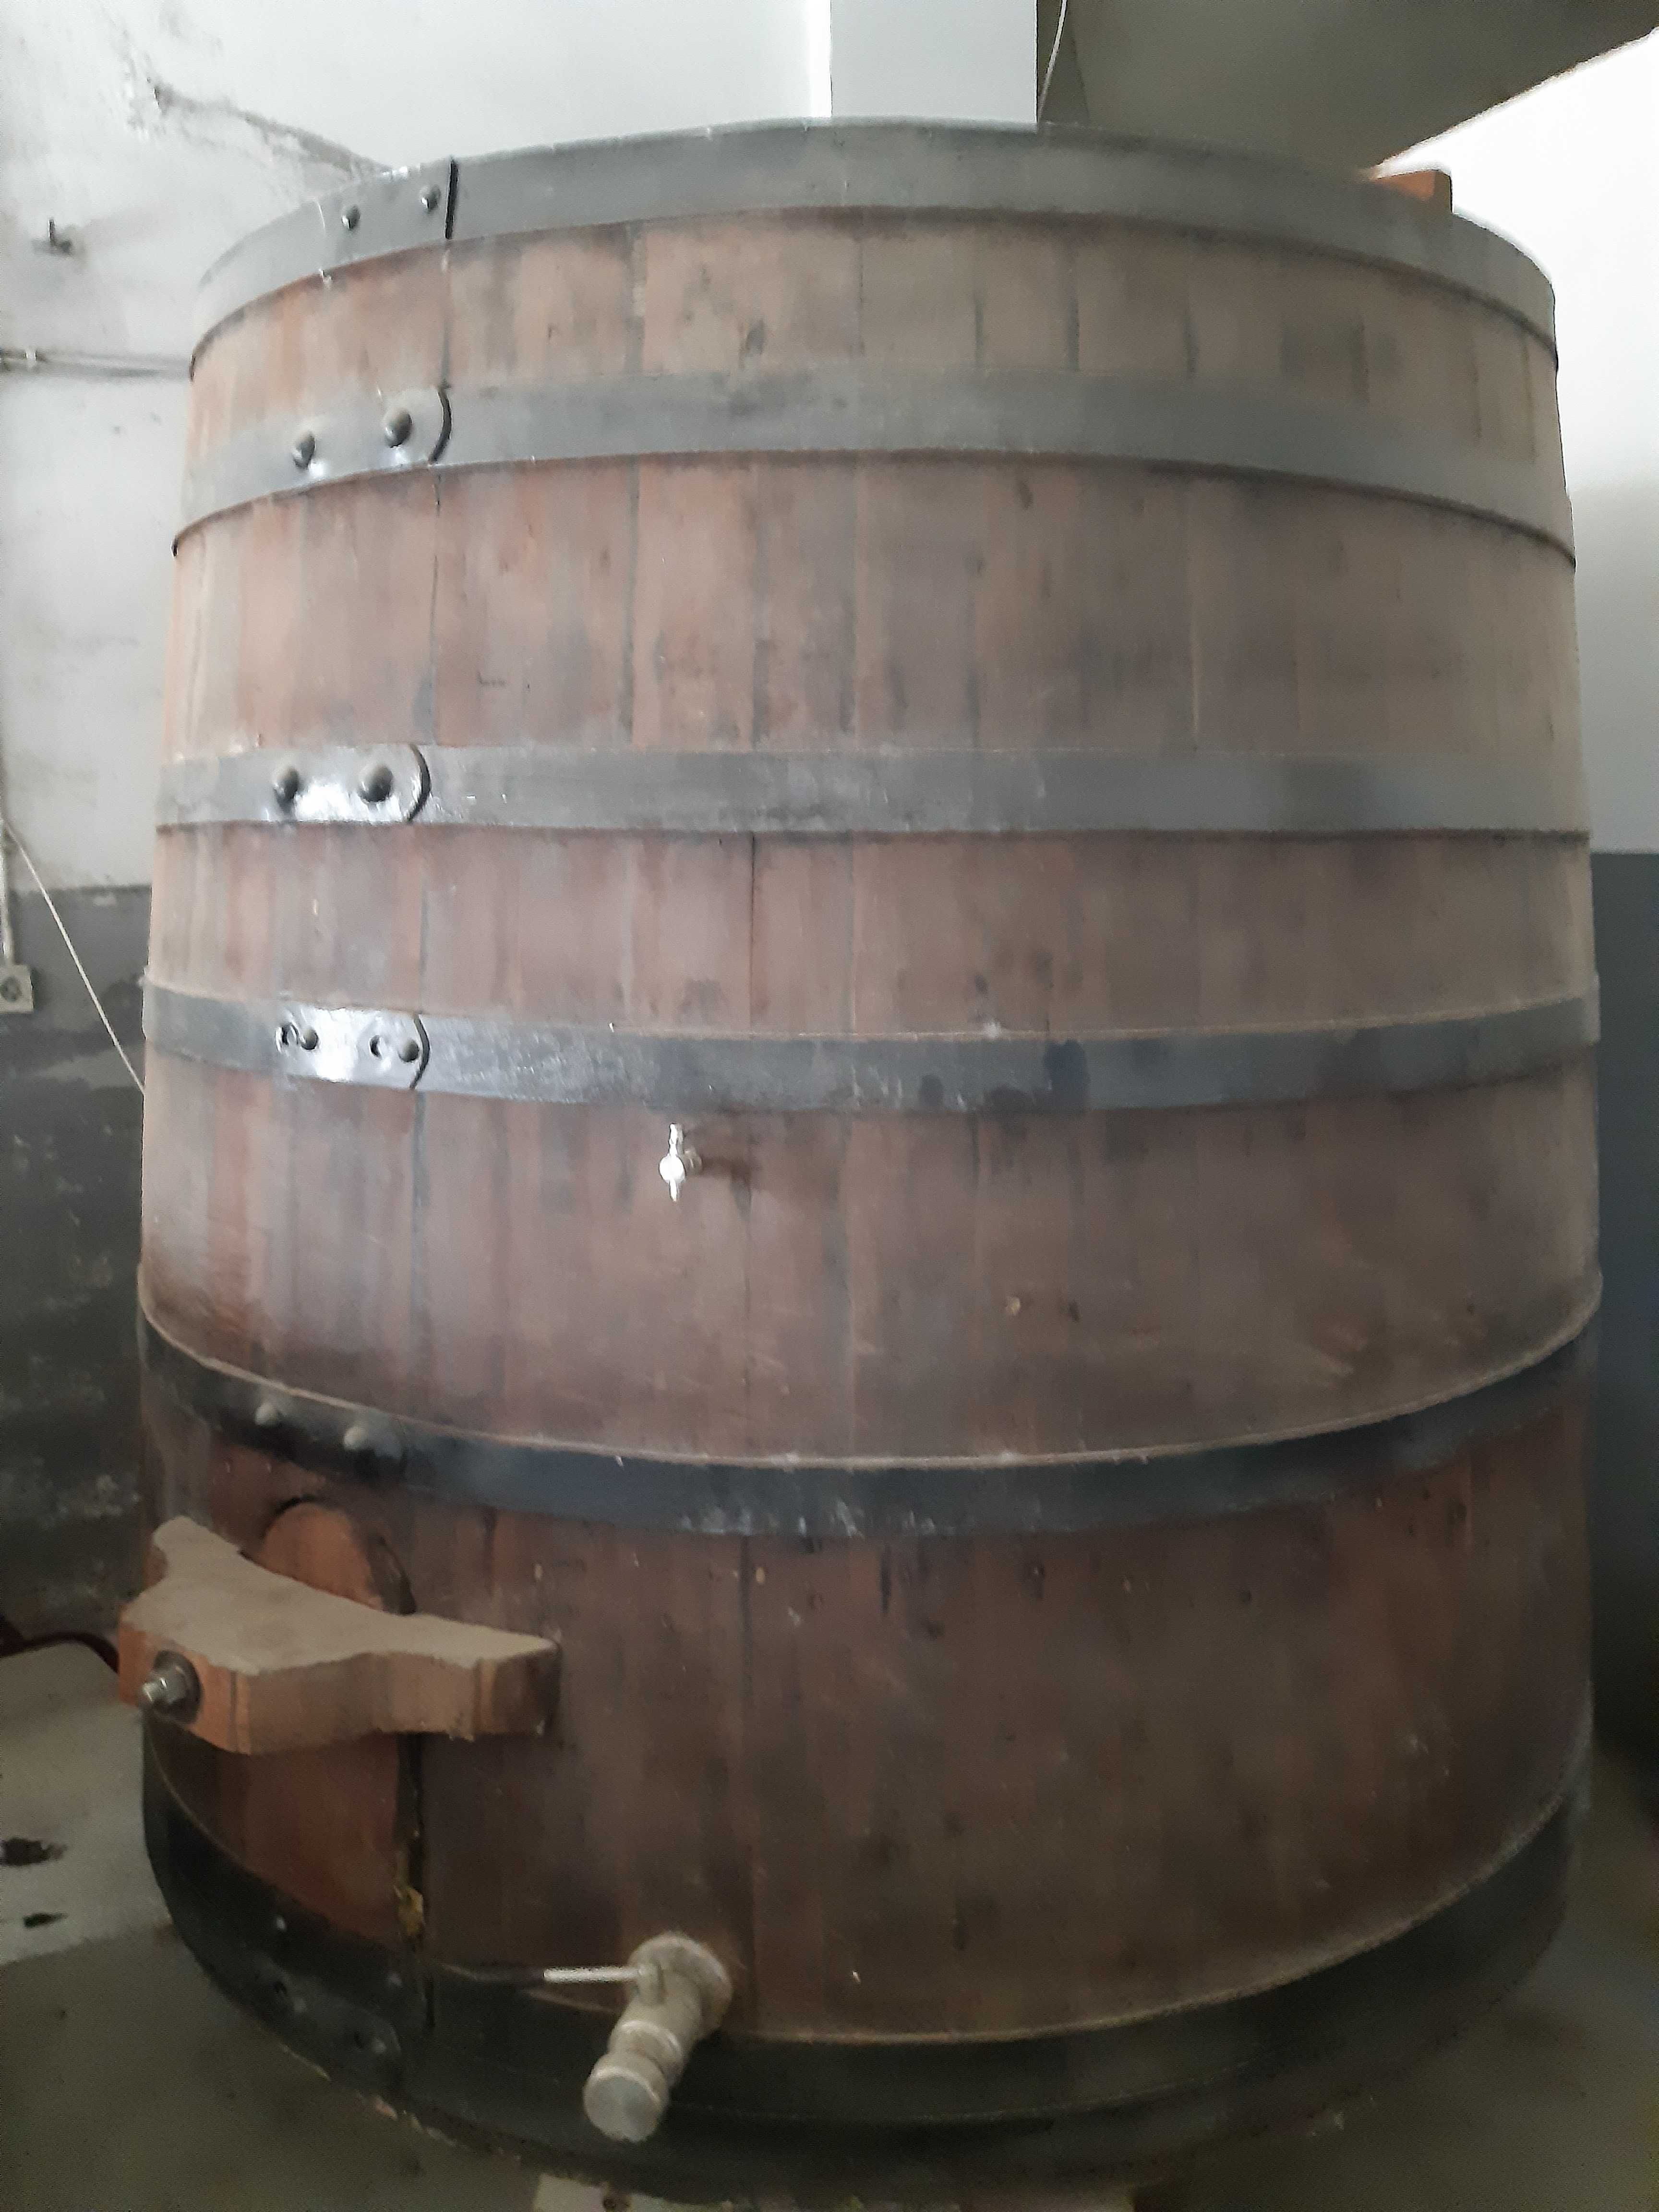 Tonel para vinho com capacidade de 4000 Litros em carvalho